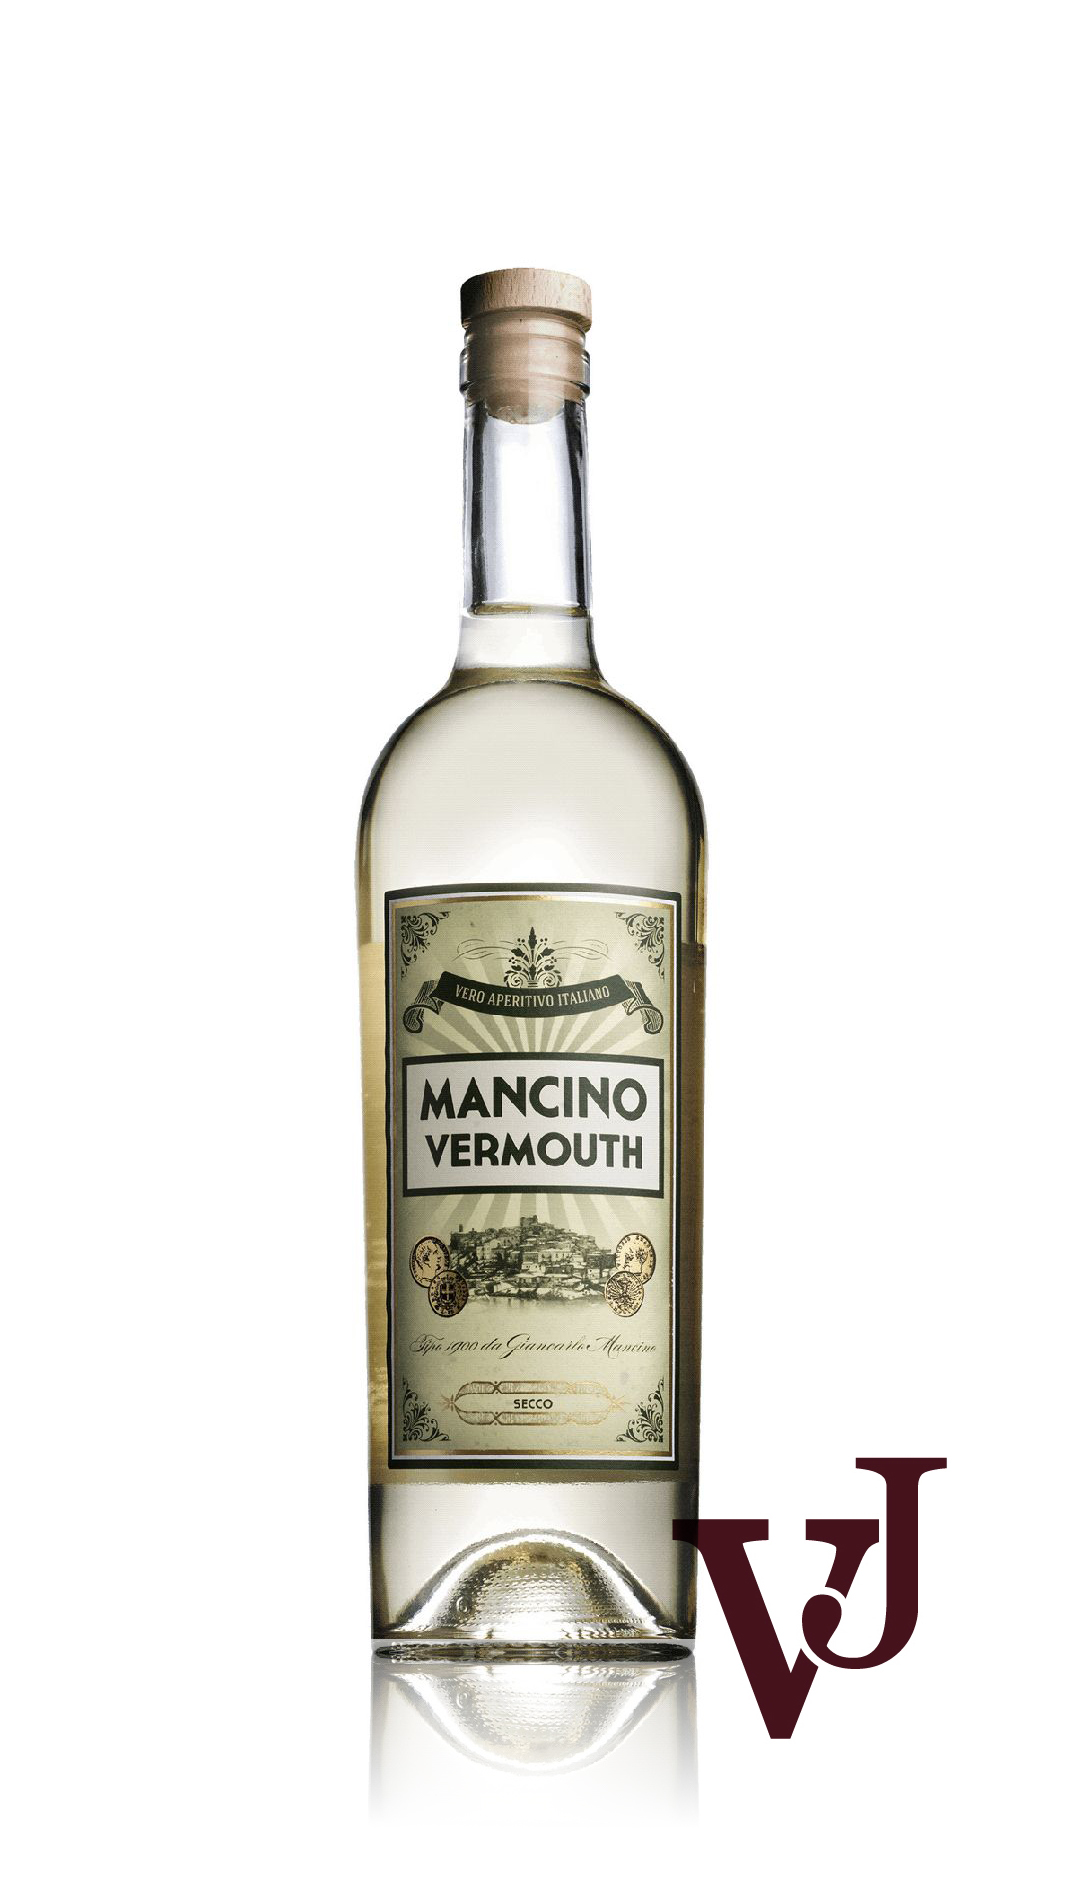 Övrigt vin - Mancino Vermouth Secco artikel nummer 7670101 från producenten Giancarlo Mancino från området Italien - Vinjournalen.se